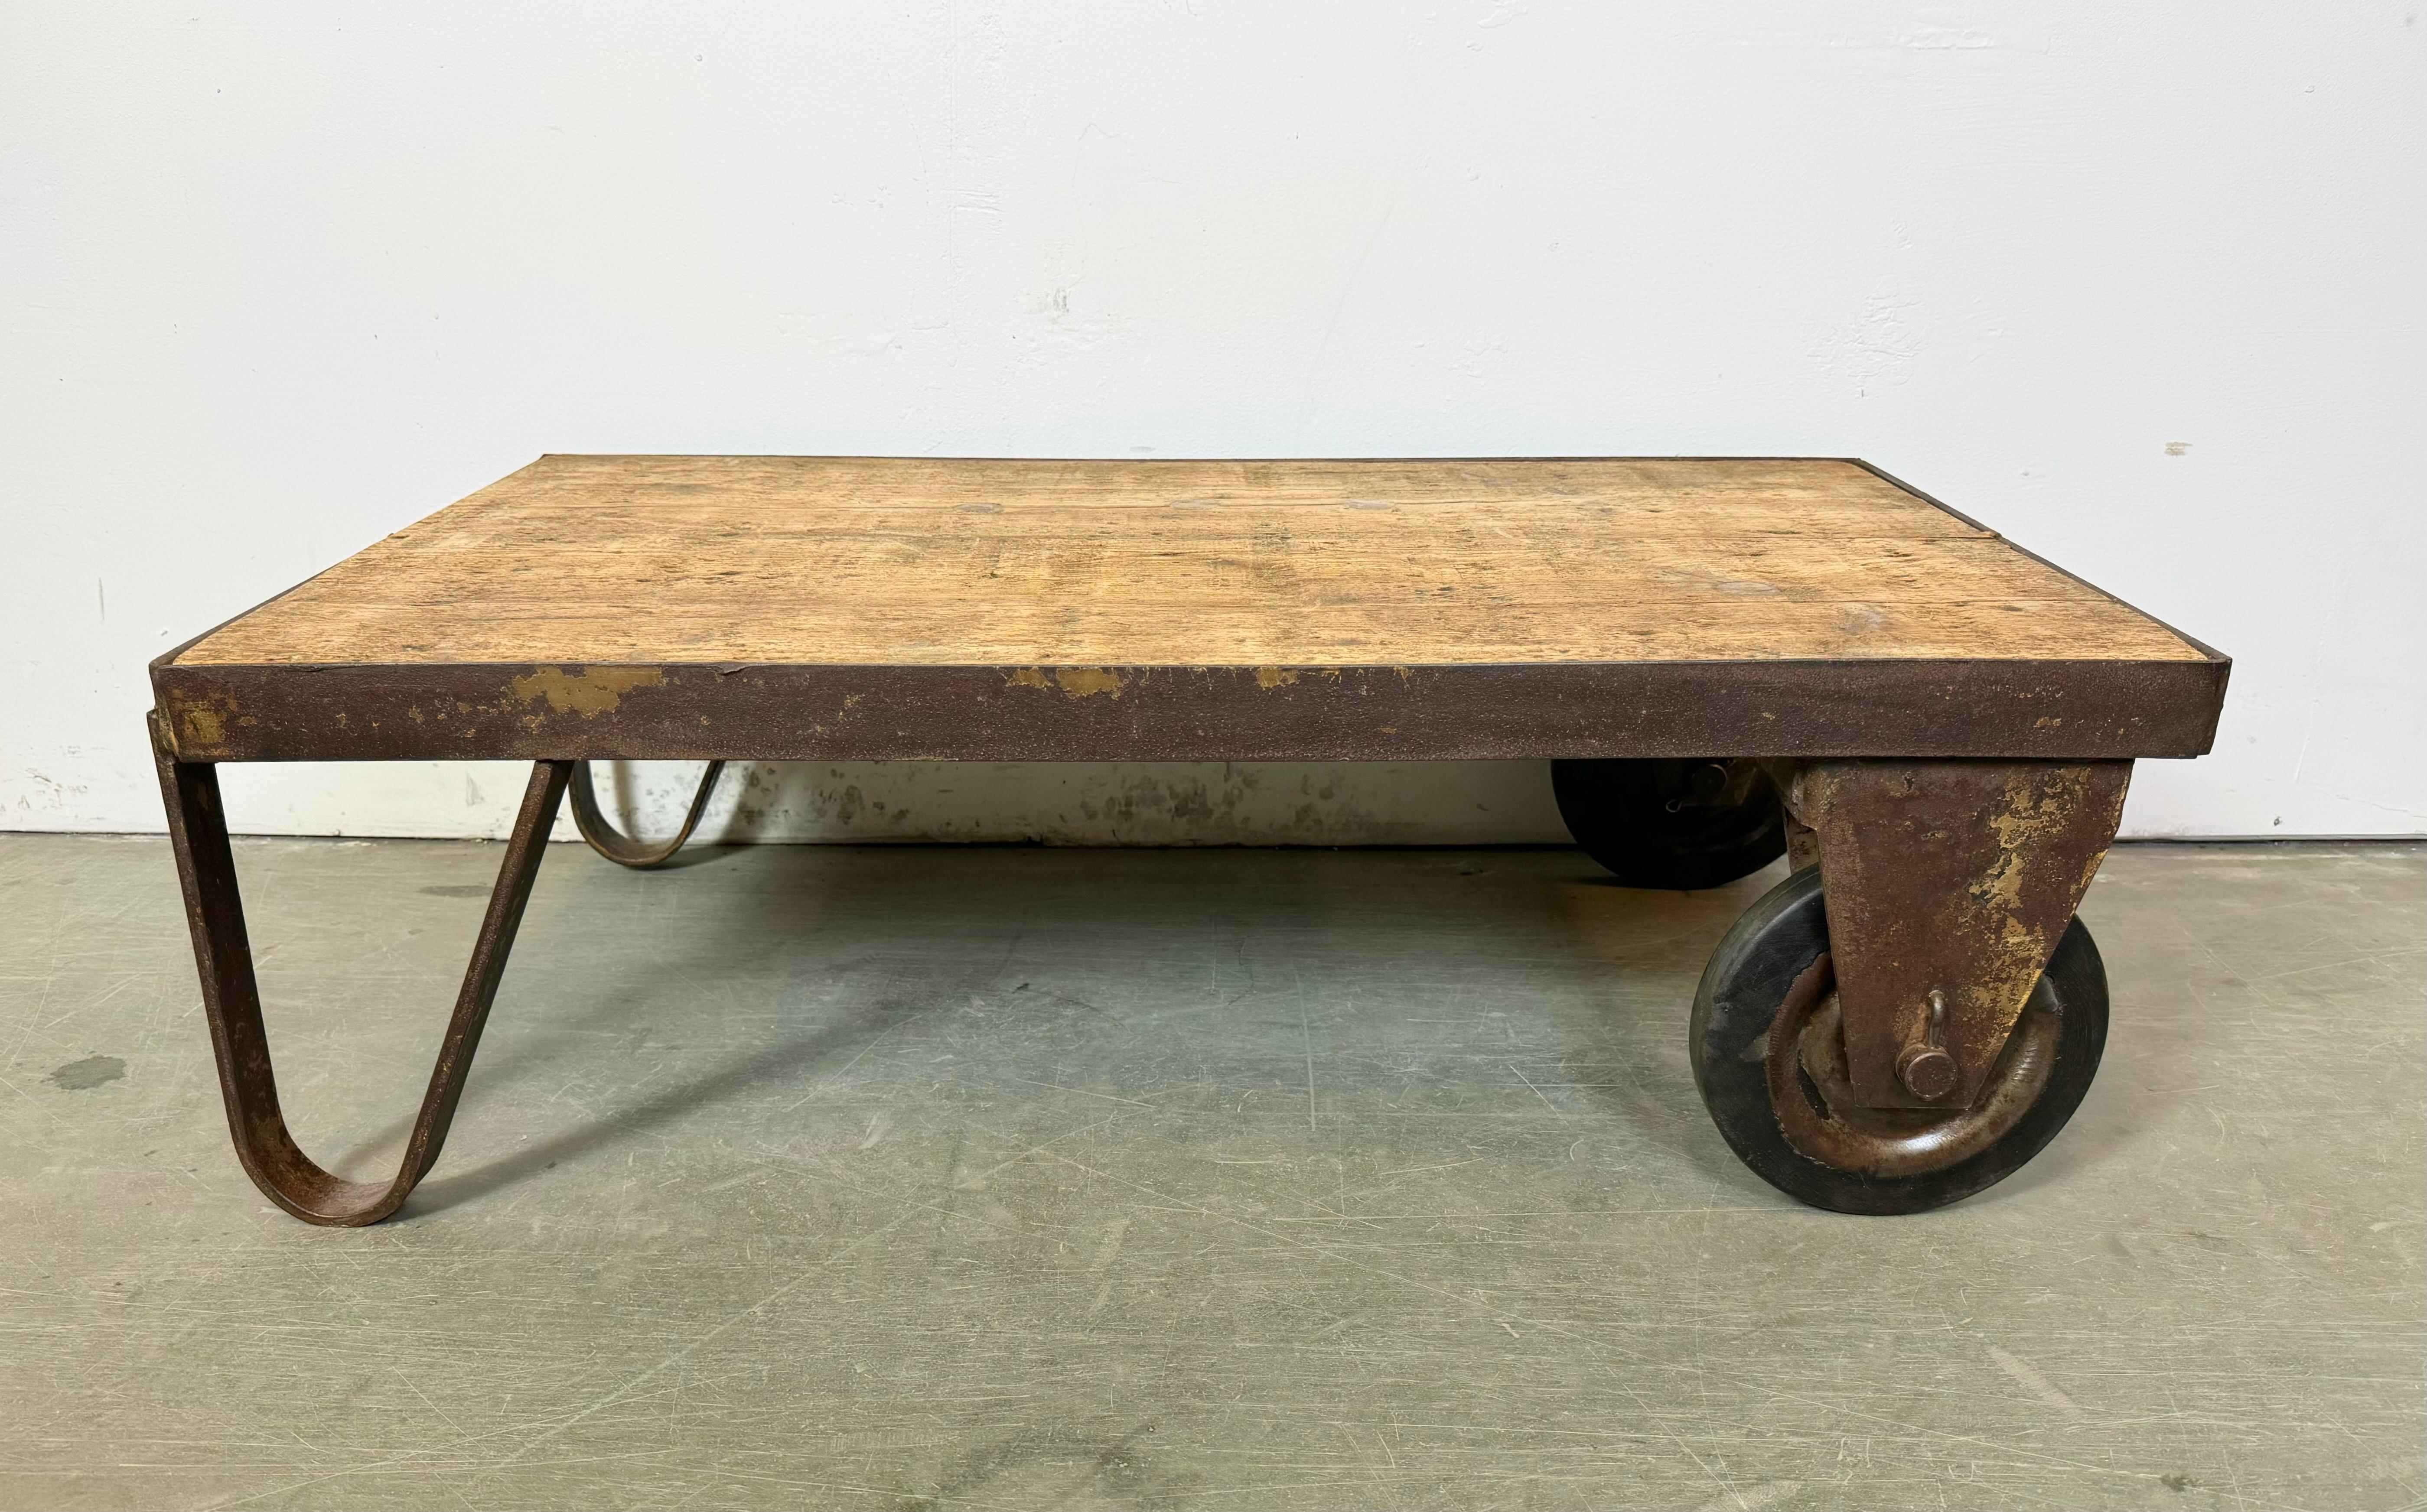 Un ancien transpalette provenant d'une usine sert désormais de table basse. Il est construit en fer jaune avec deux roues d'origine et une solide plaque en bois. Le poids de la table est de 25 kg.